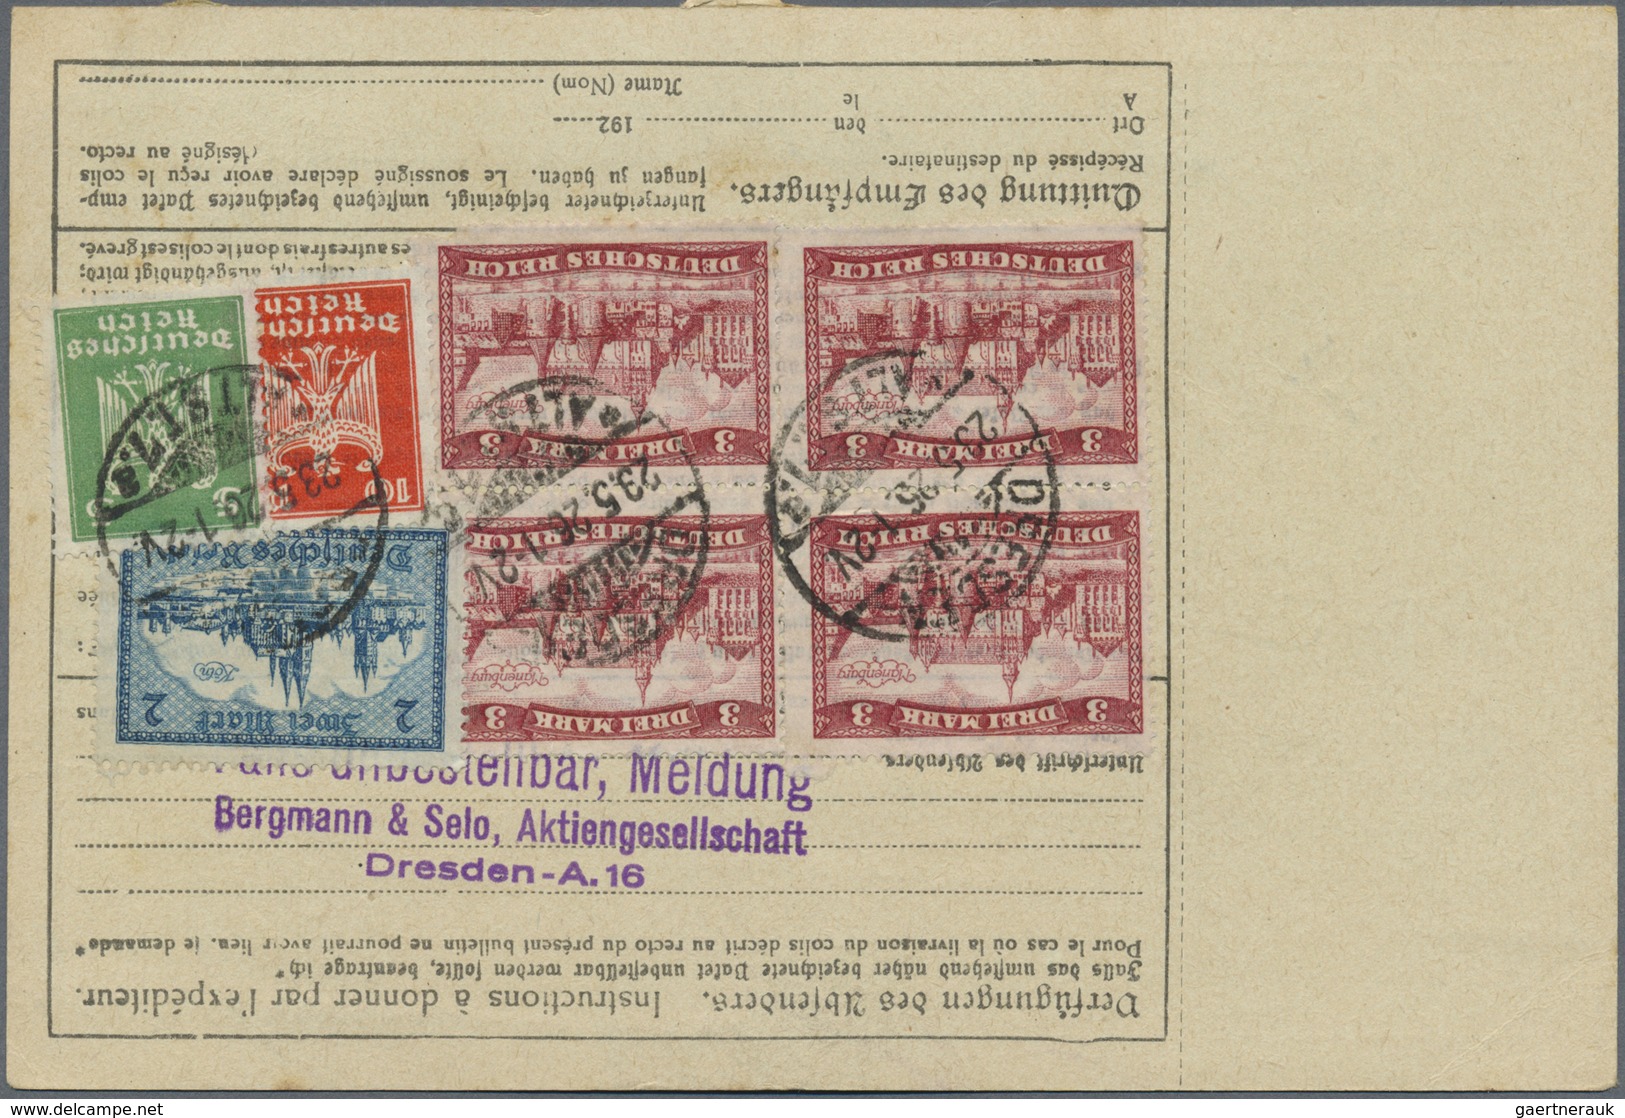 Br Deutsches Reich - Weimar: 1926: DRESDEN 7 / 23.5.26, Paketkarte Für Ein Paket "Eilboten" Und "dringe - Ungebraucht